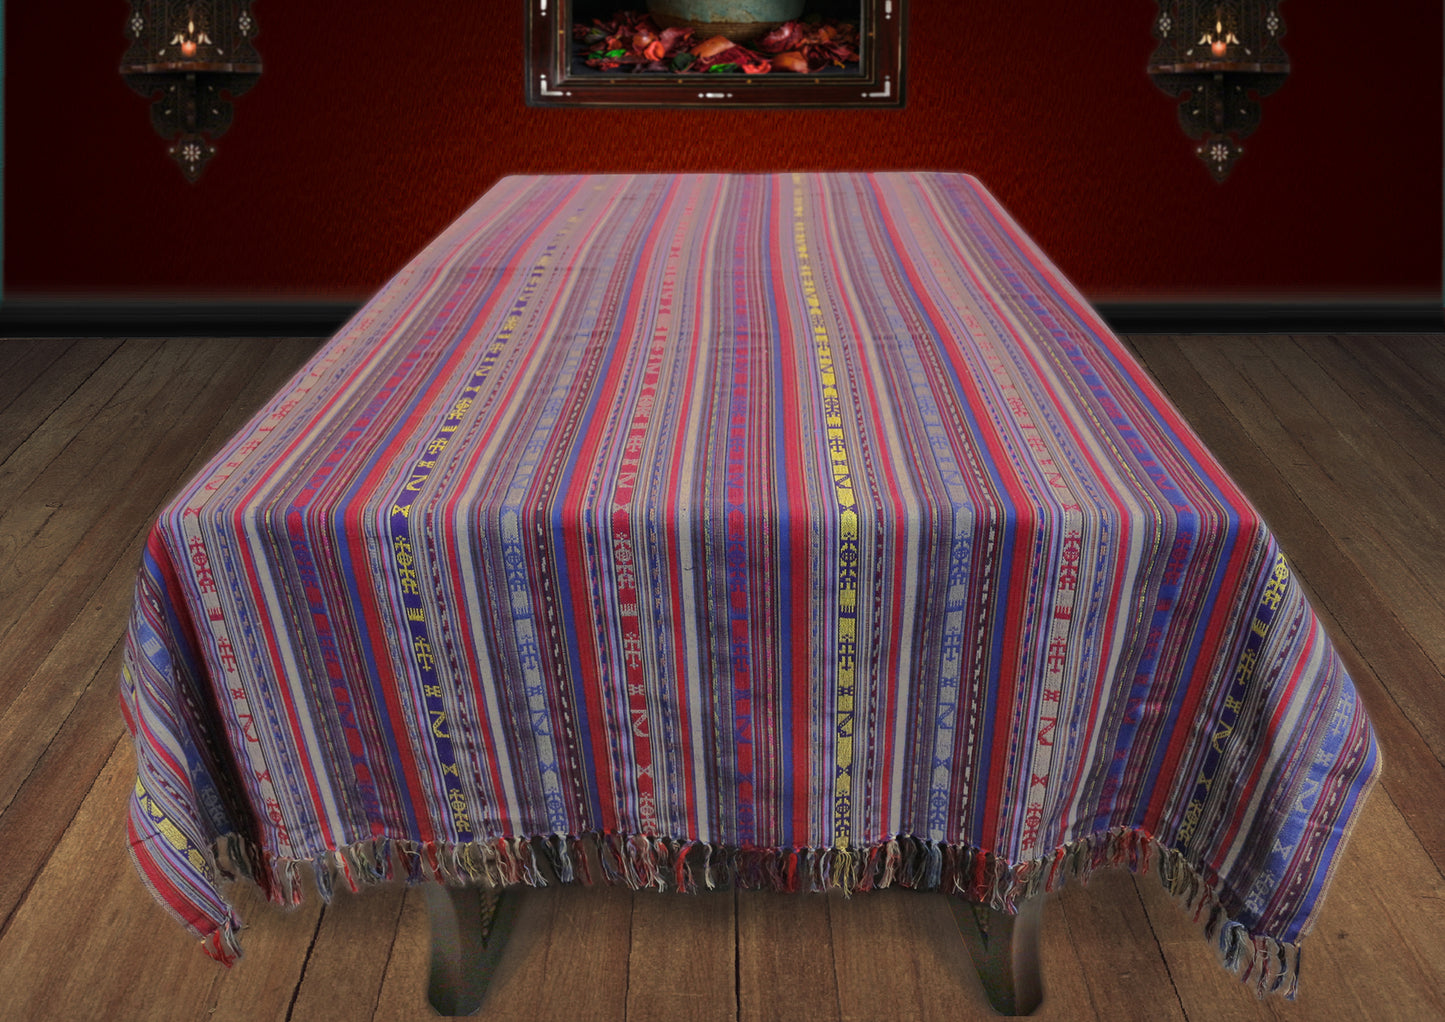 Farbenfrohe Tischdecken aus Baumwollemischung, Damesco Stoffe, Damaskunst TS 004